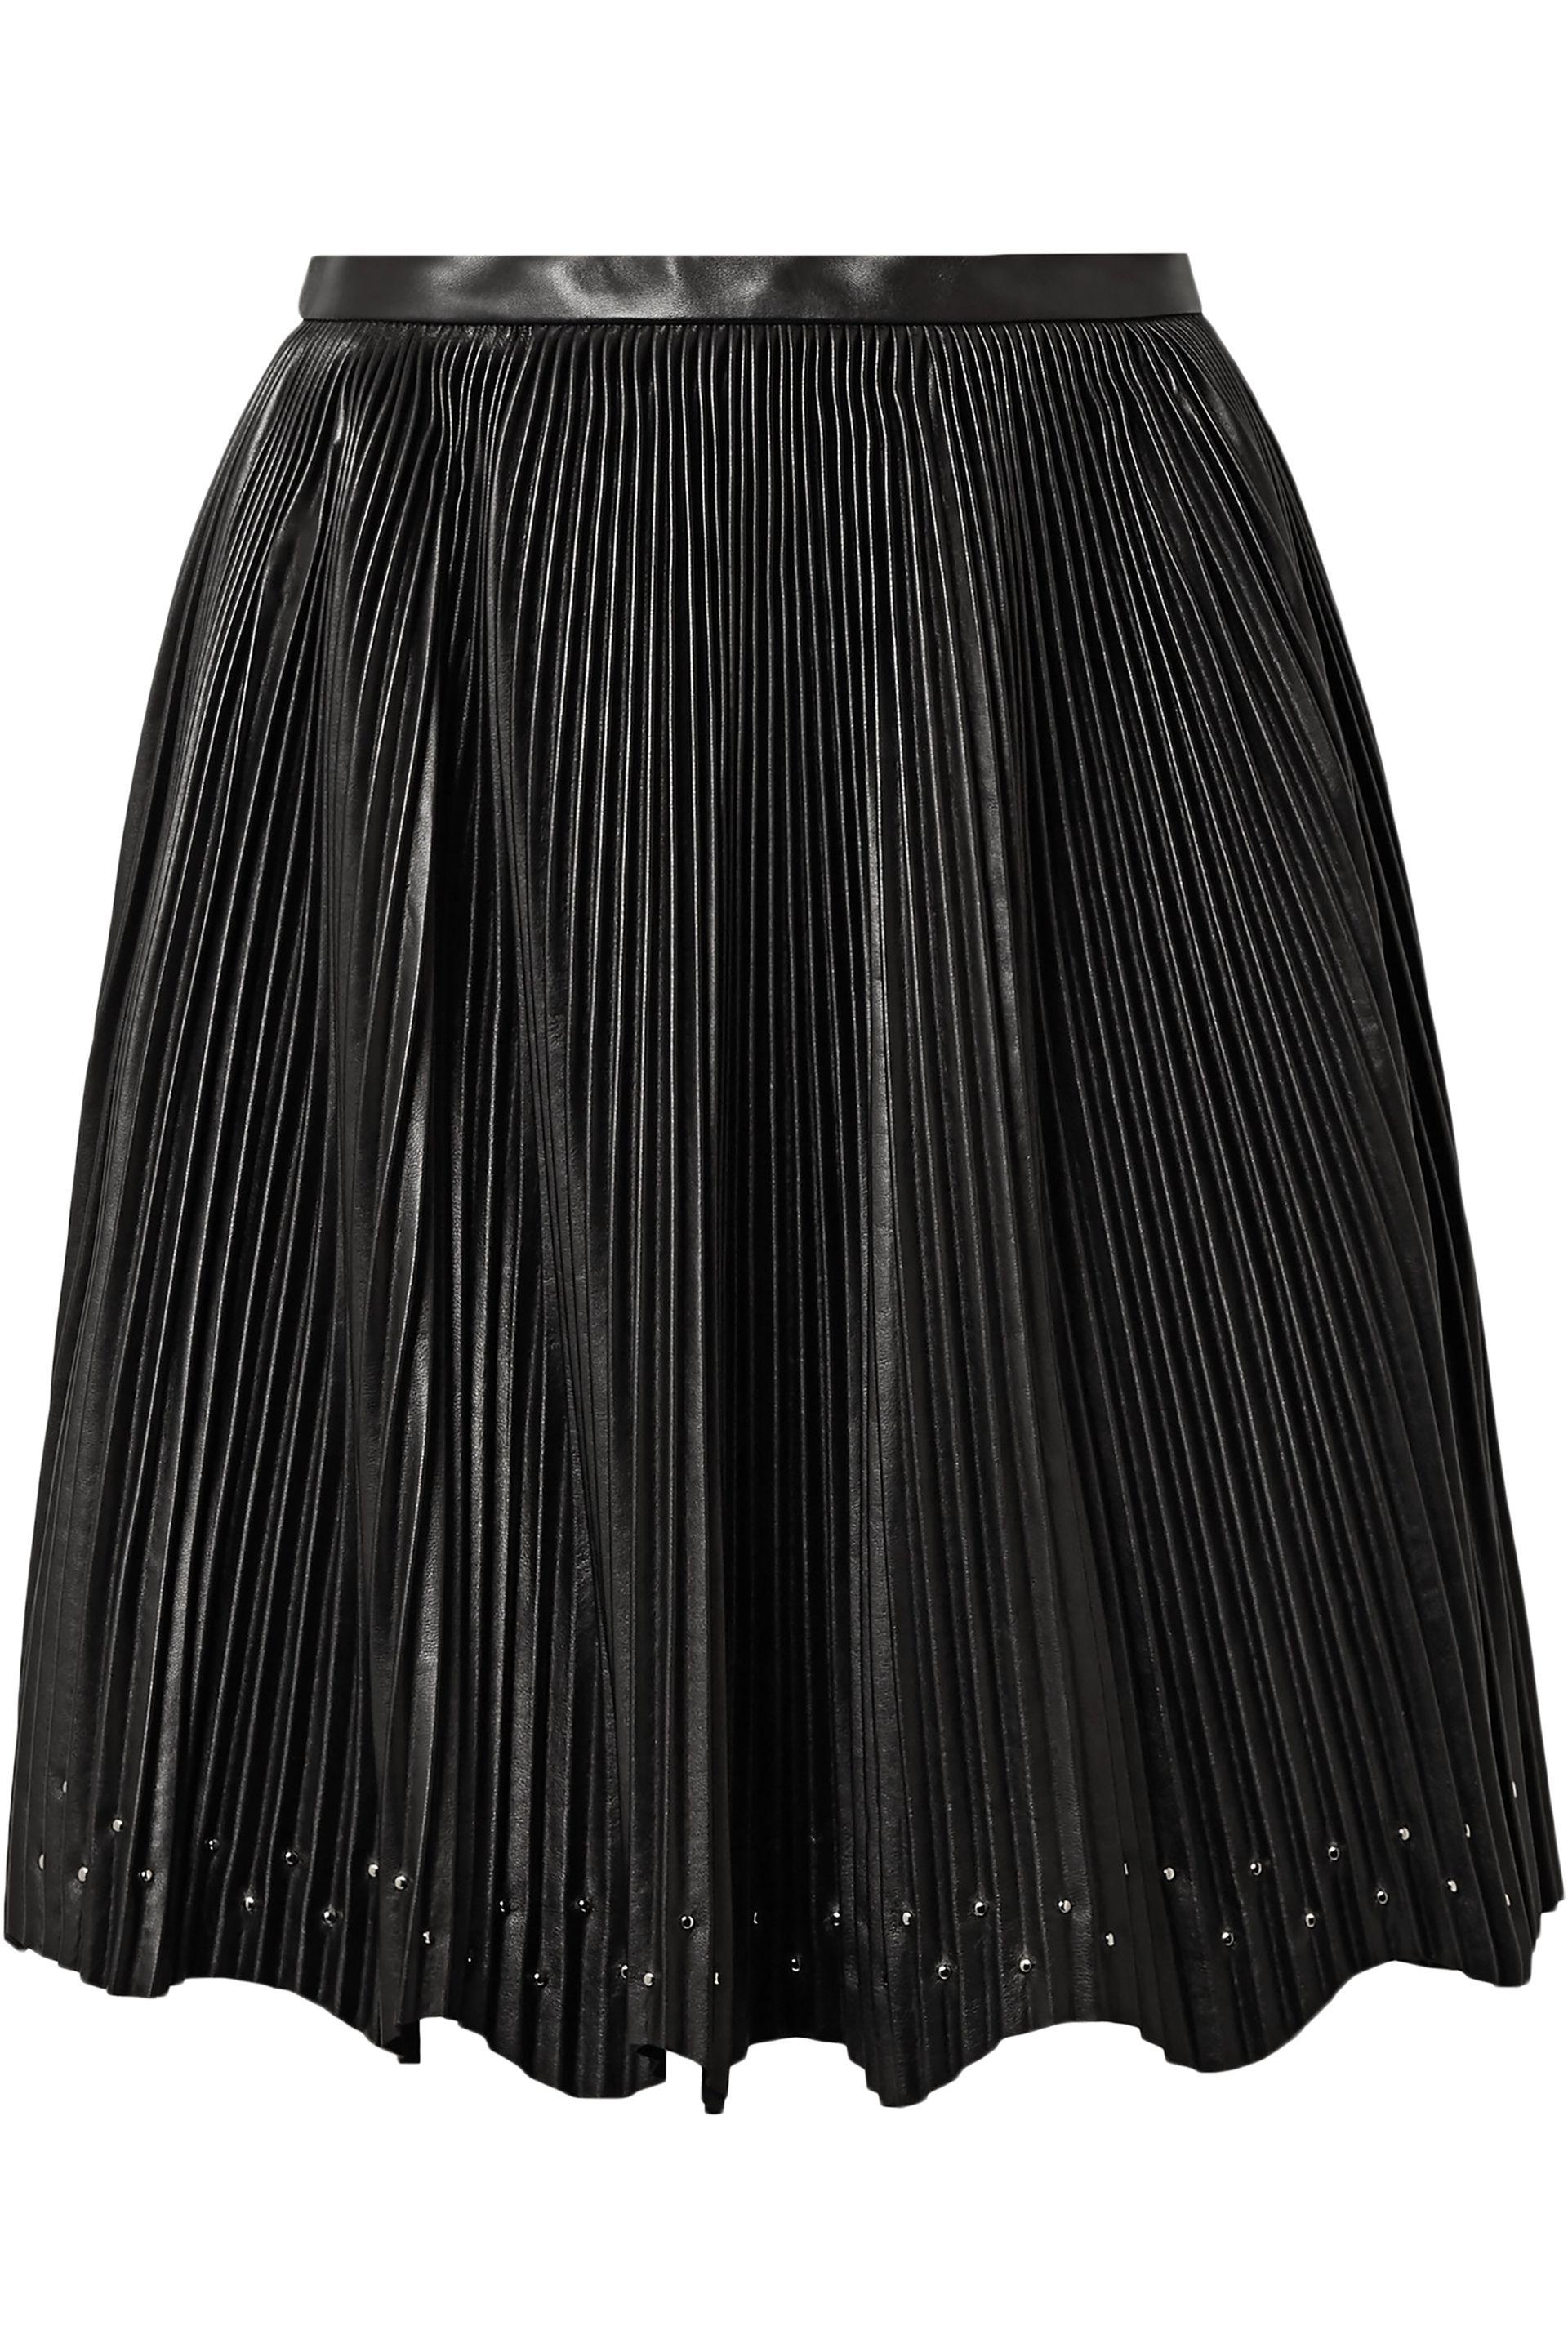 Elie Saab Studded Plissé-leather Mini Skirt Black - Save 40% - Lyst